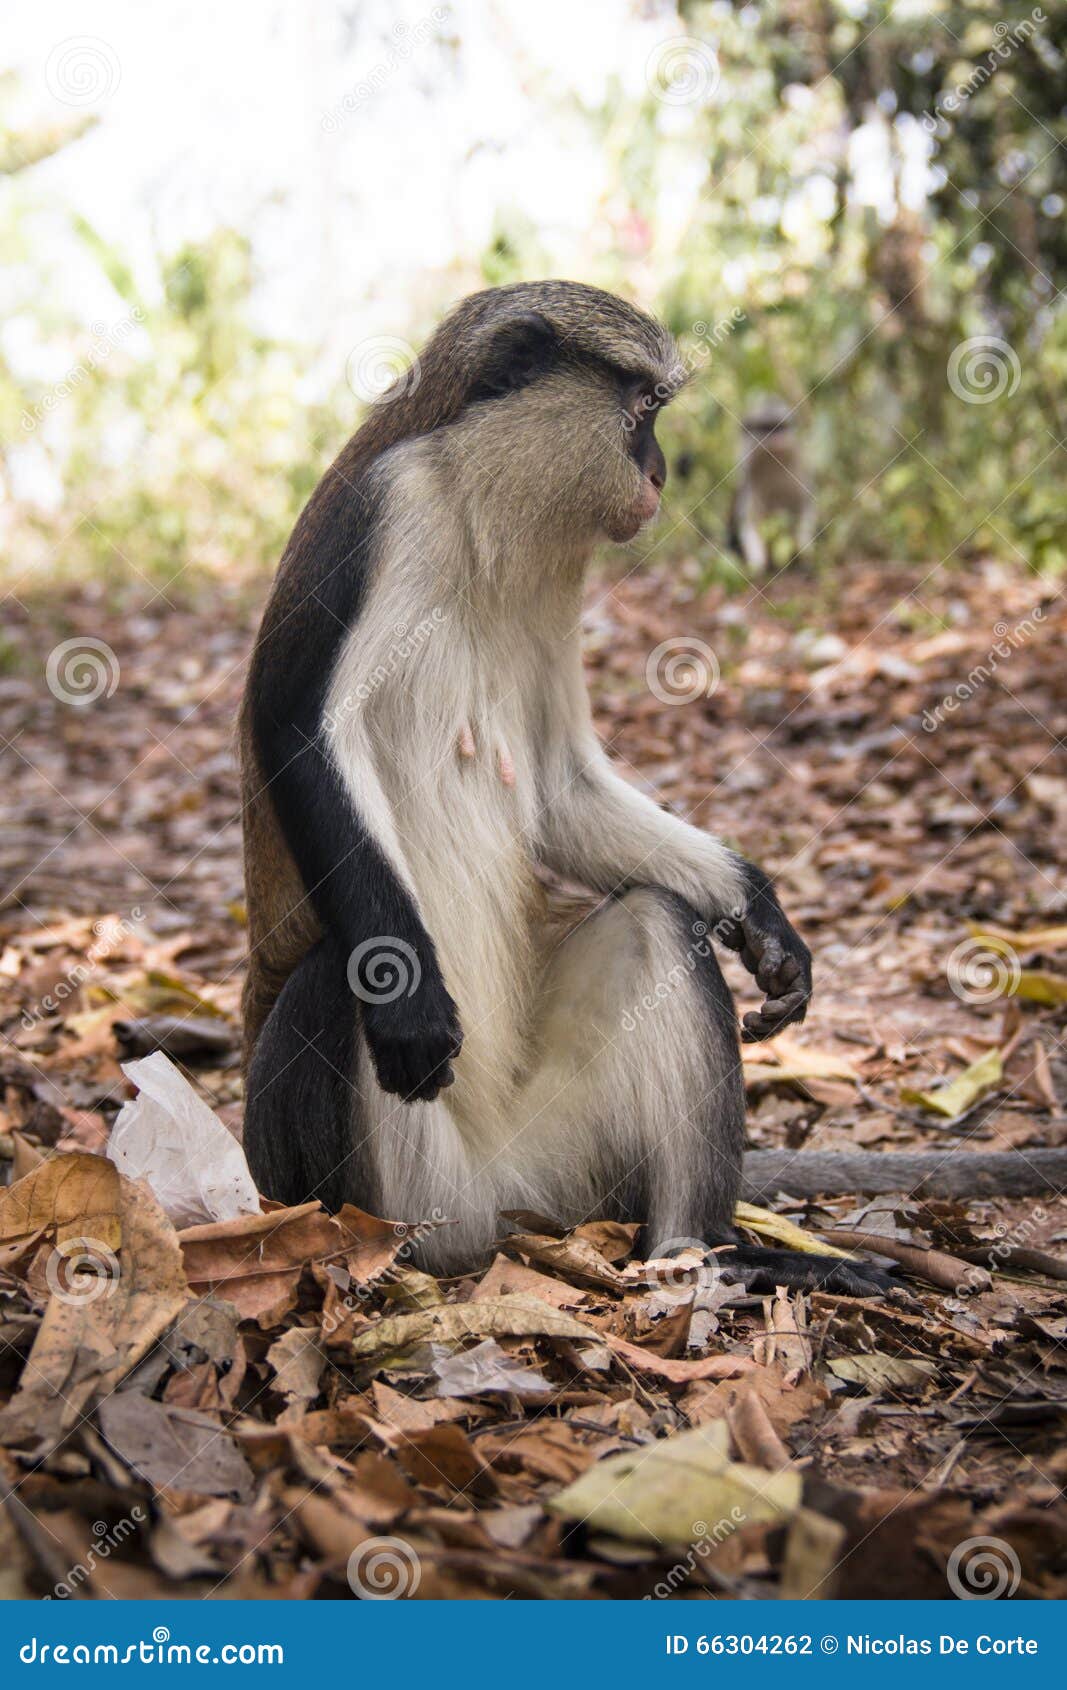 mona monkey in tafi atome in the volta region in ghana